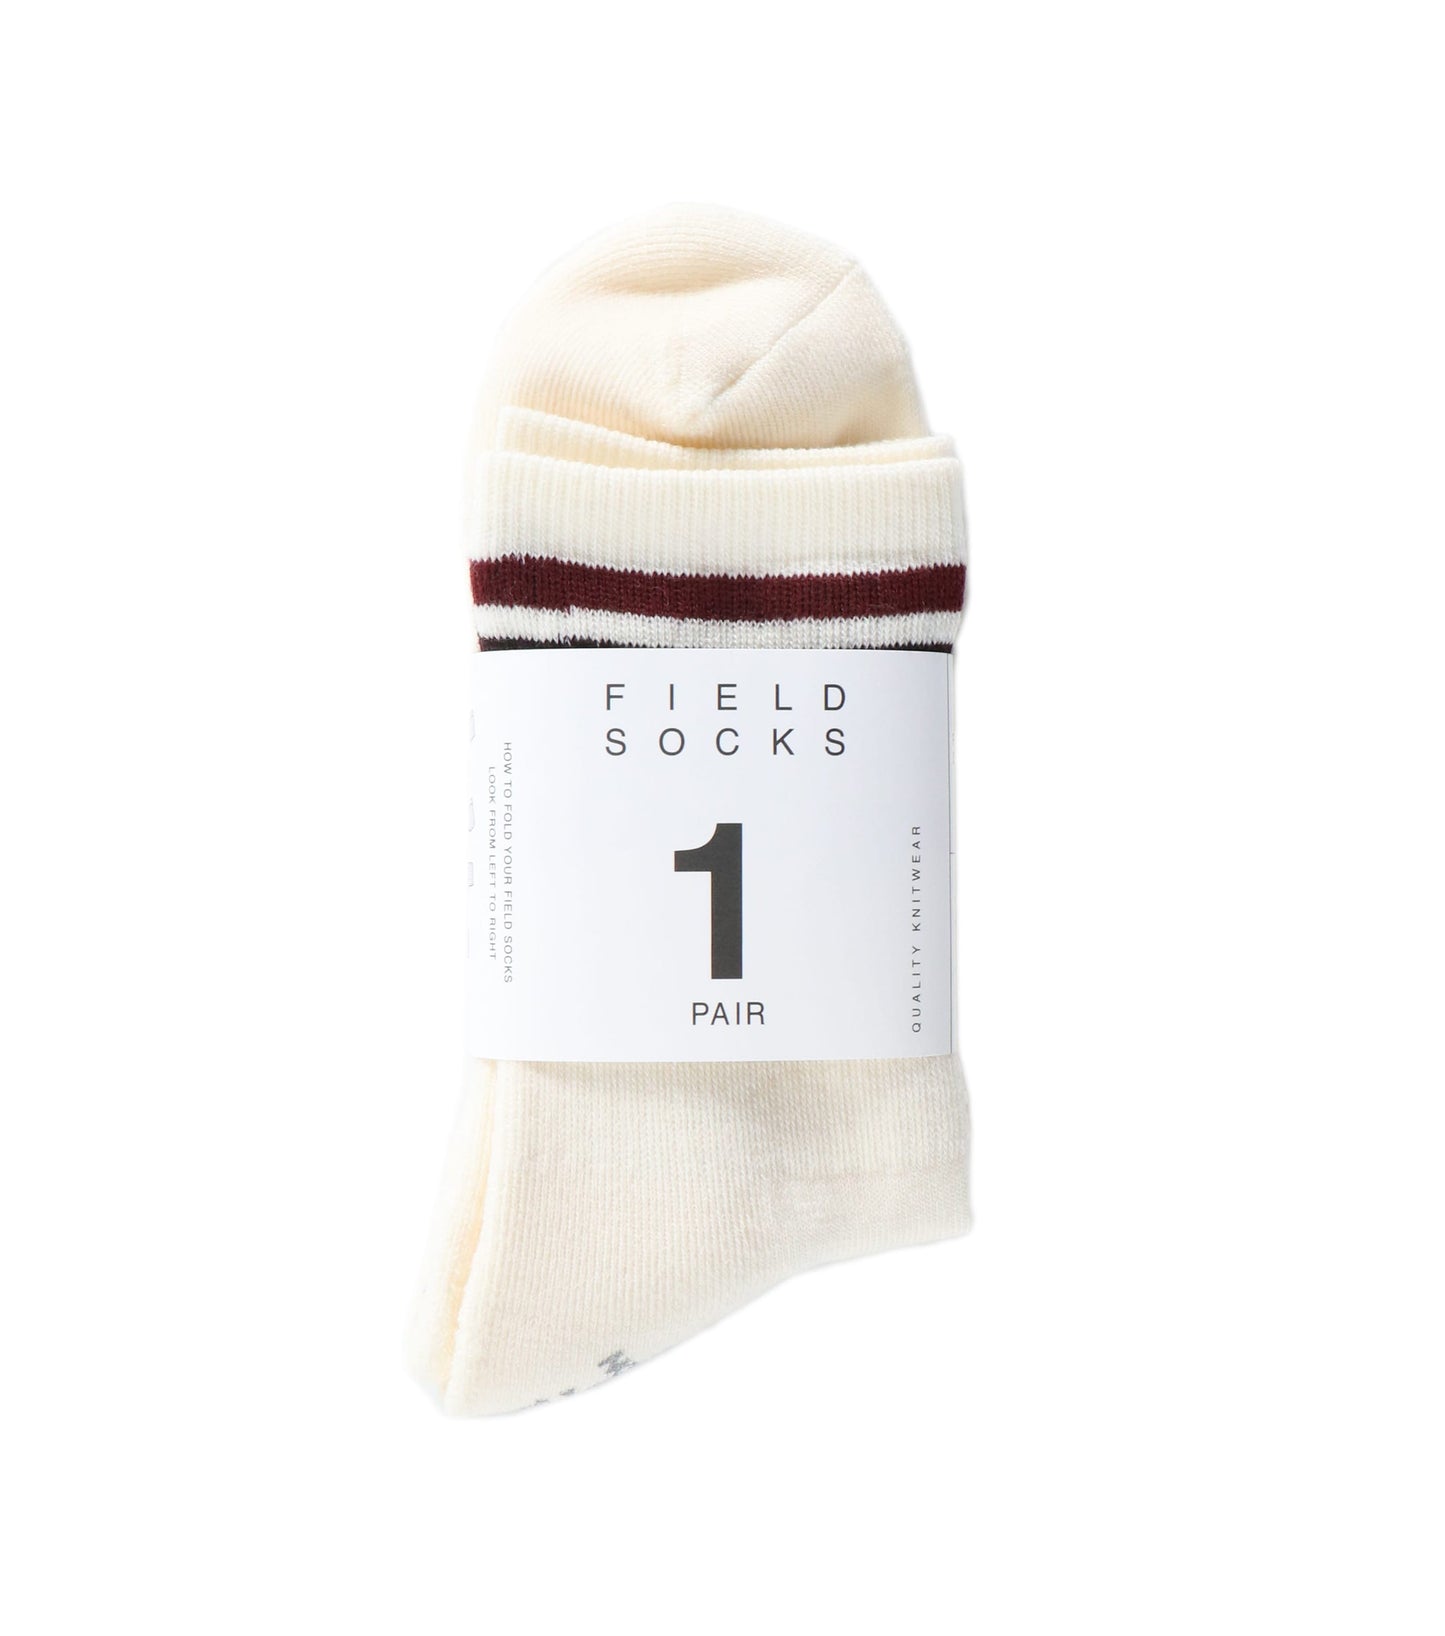 Merino Wool Field Socks